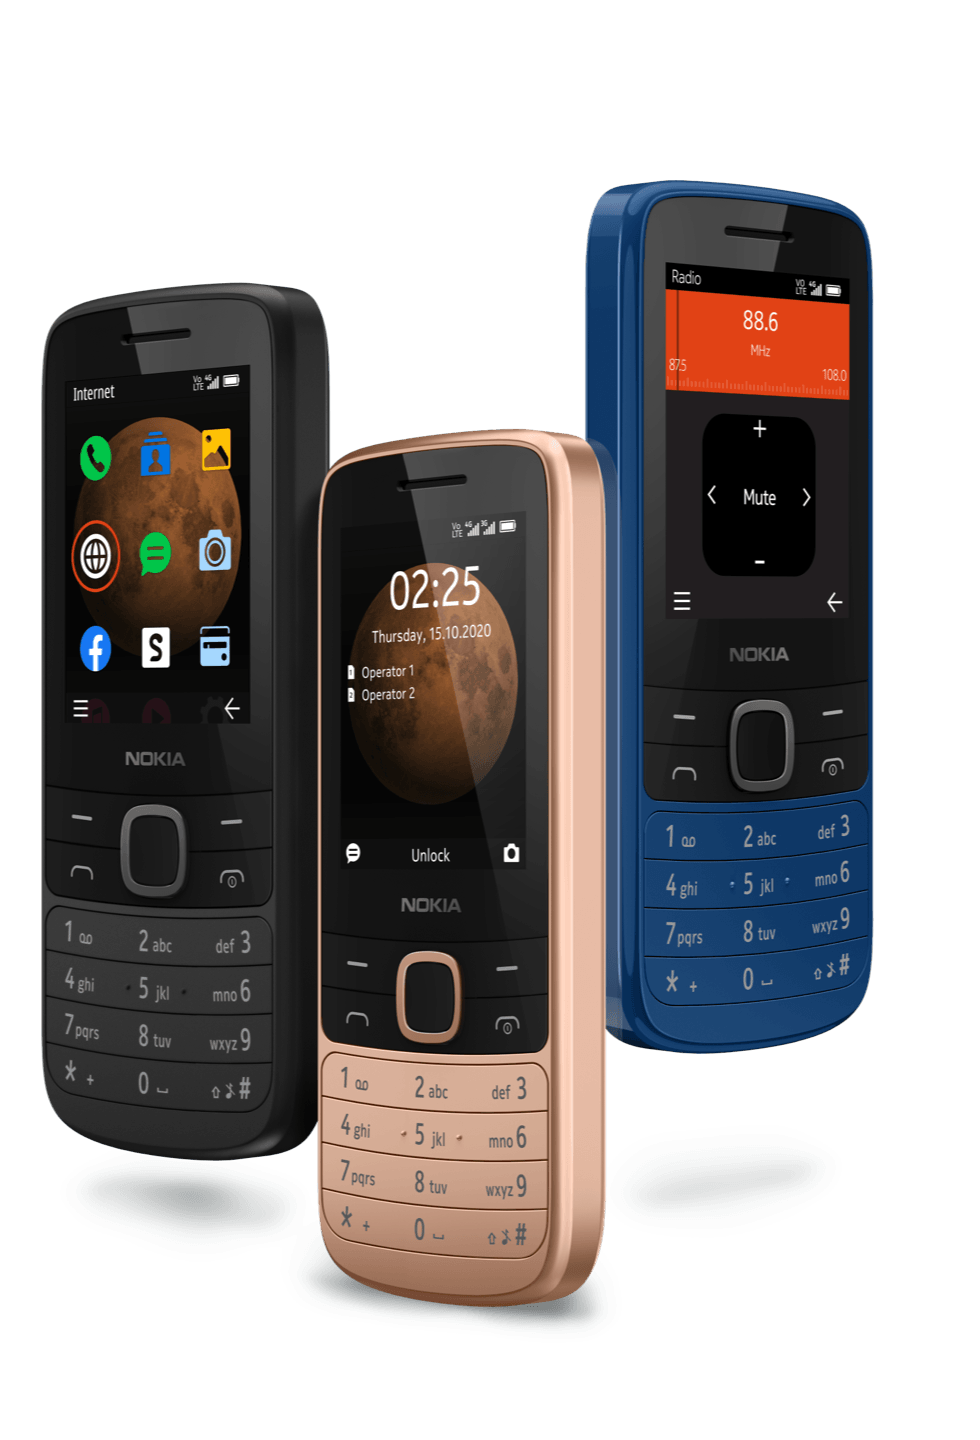 Nokia 225 4G (Dual Sim) - Mainz Empire Pte Ltd